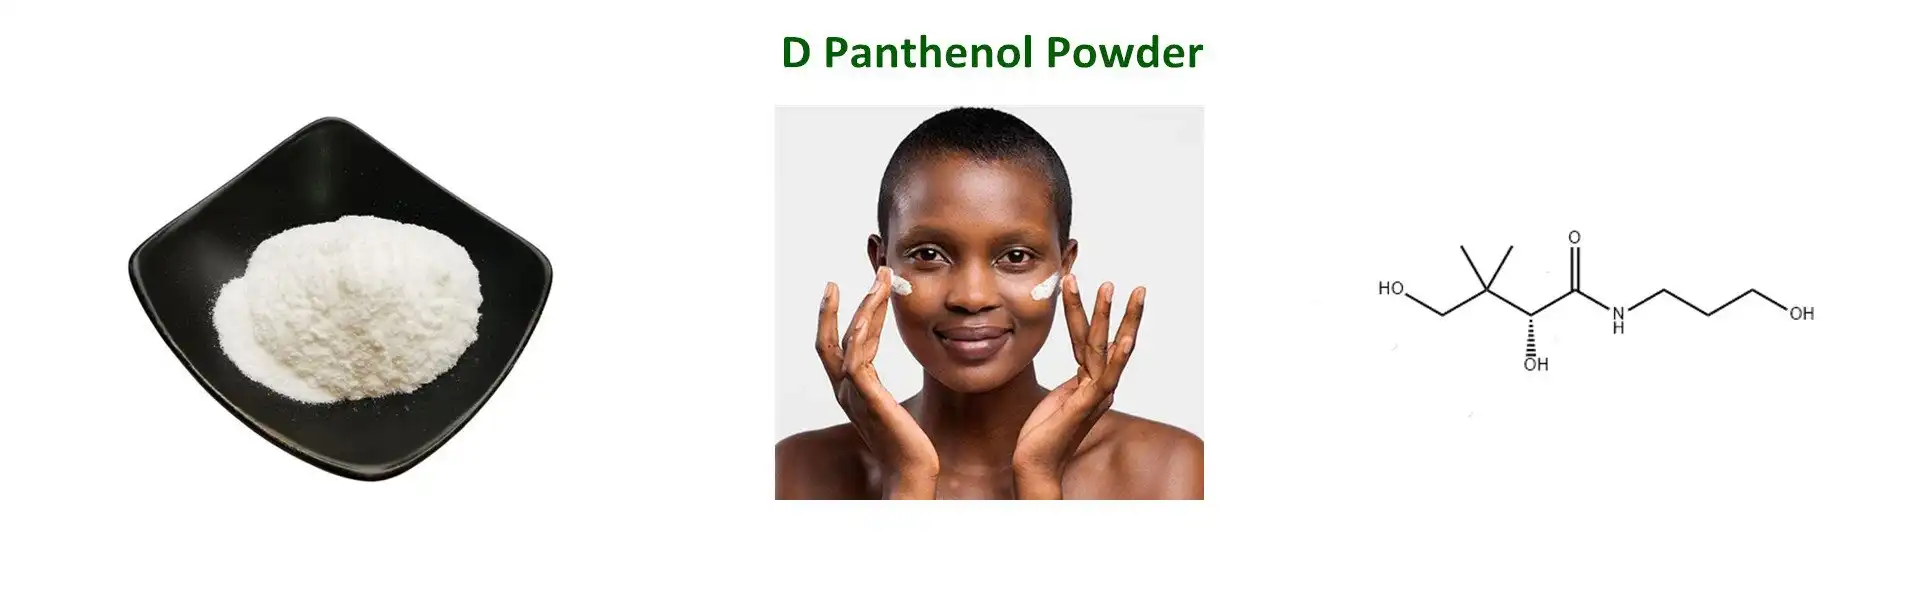 D Panthenol Powder